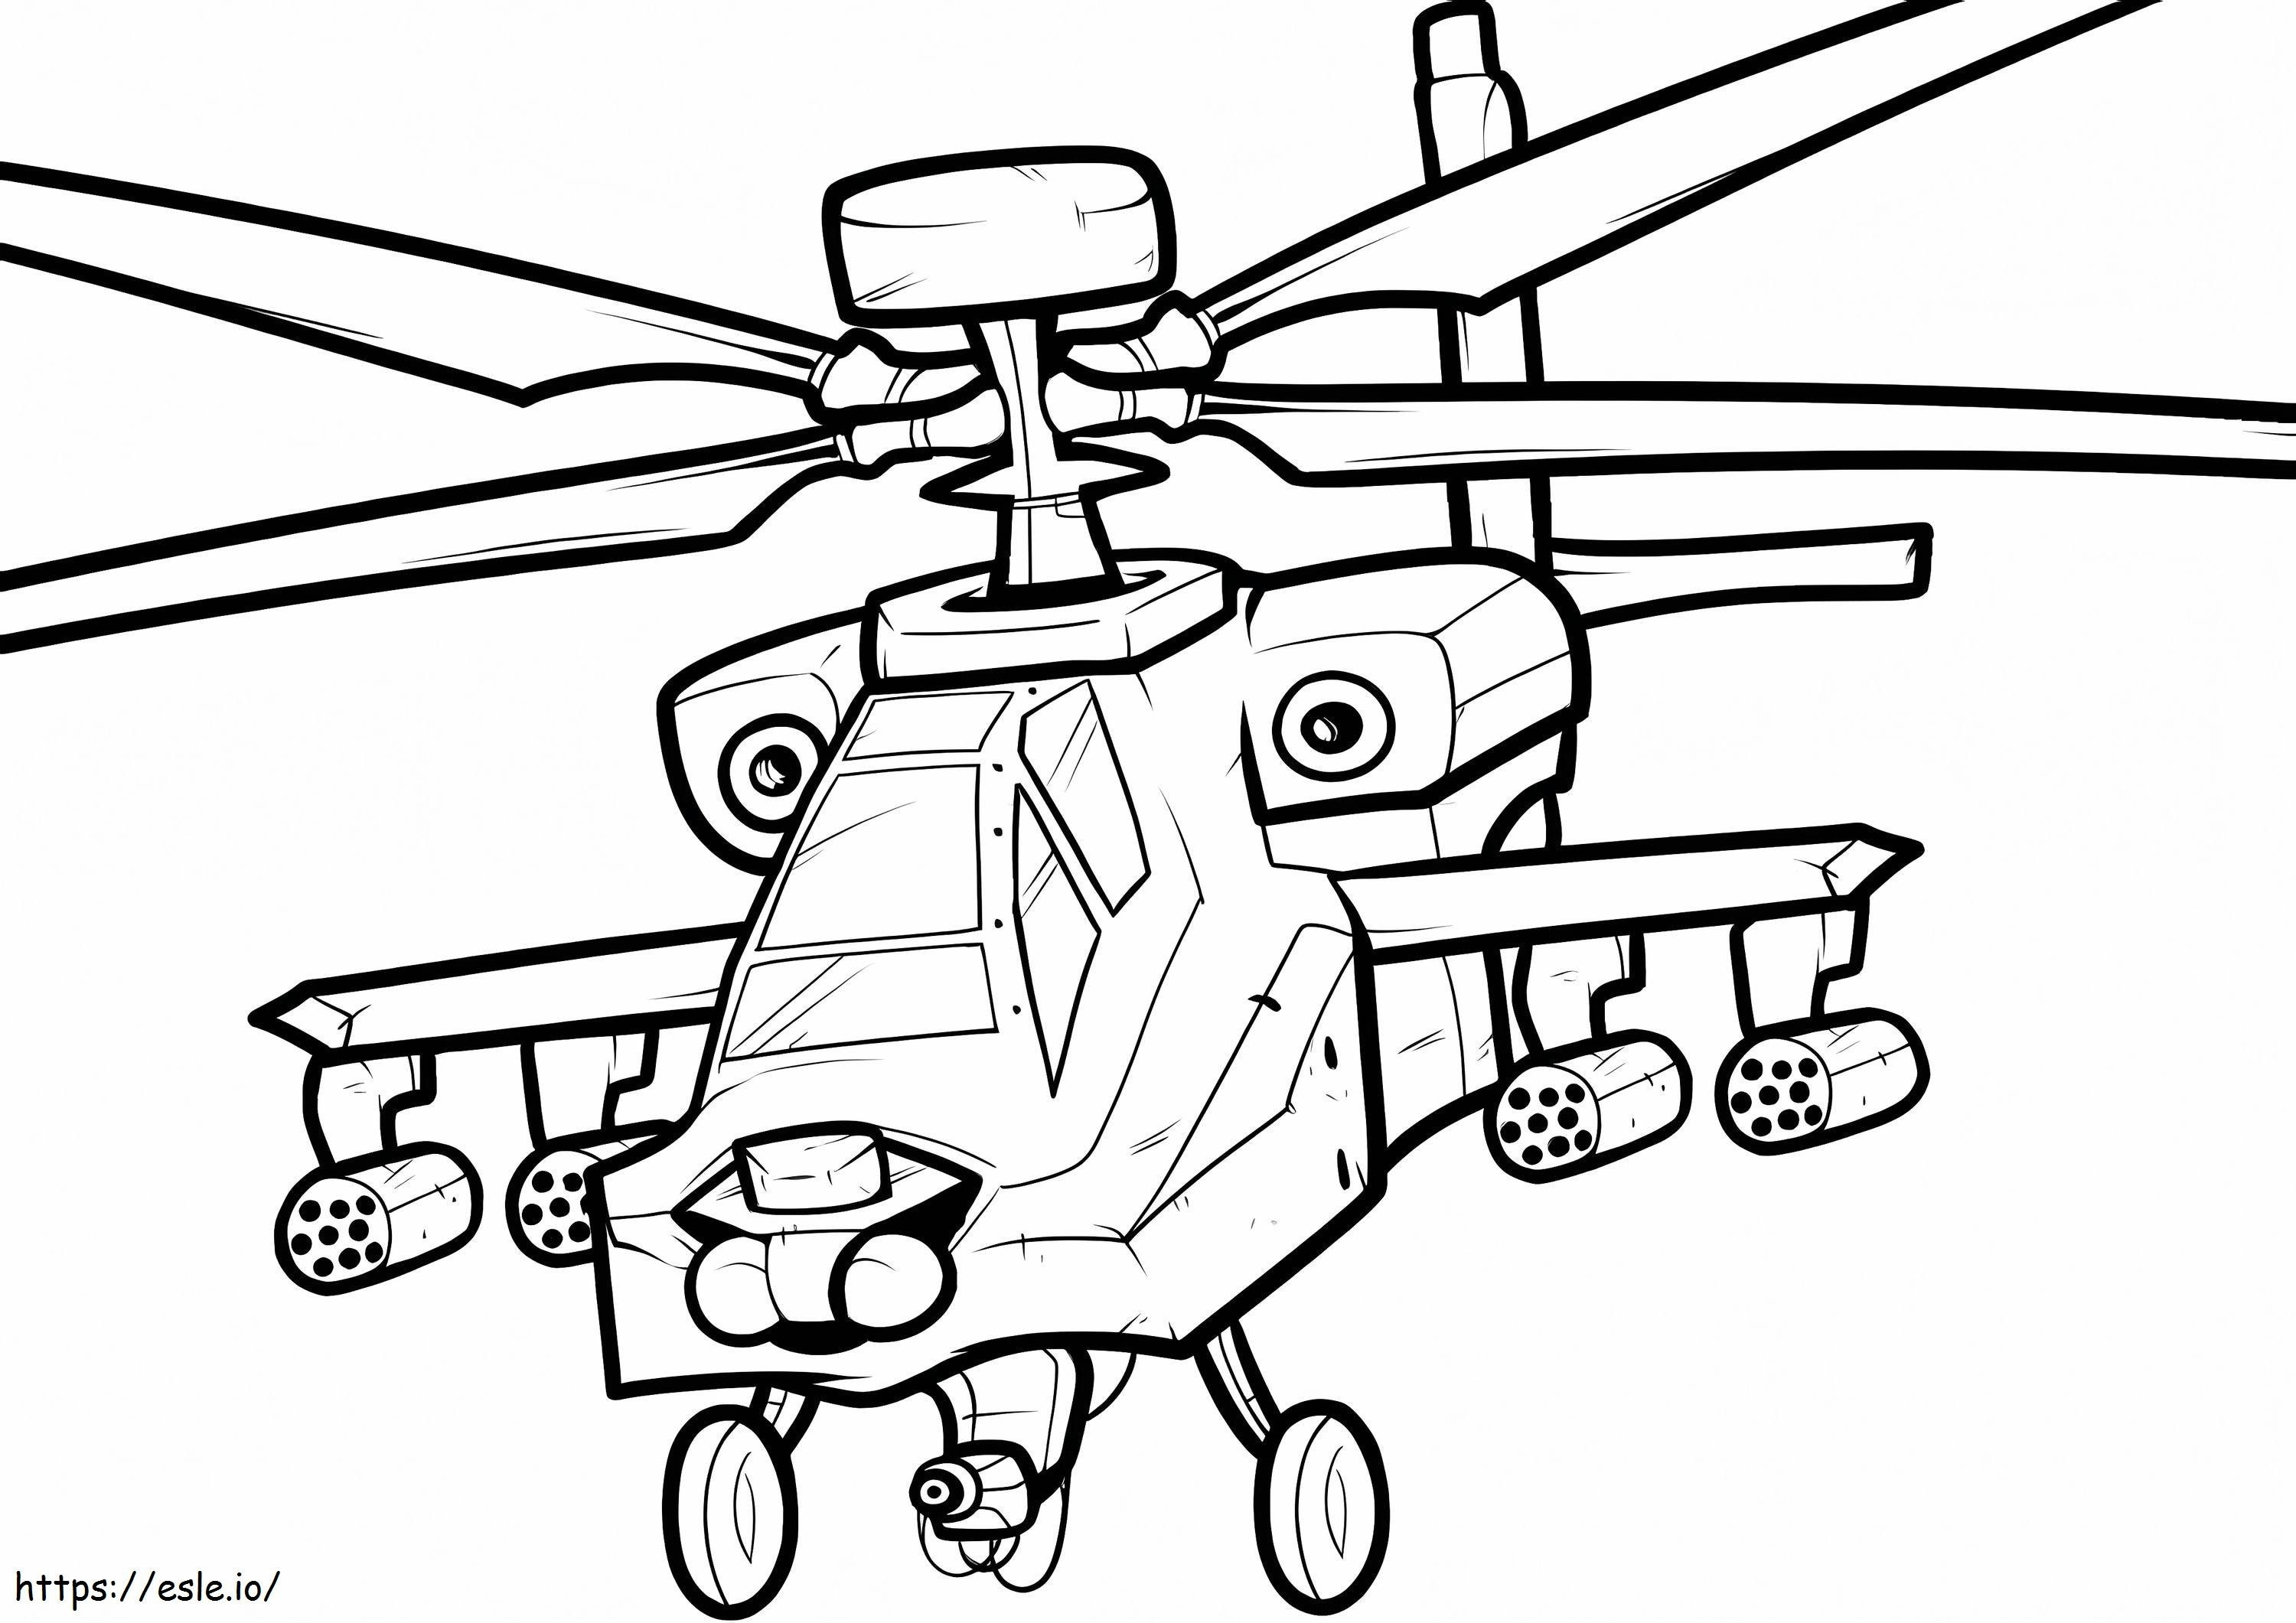 Coloriage Hélicoptère de guerre à imprimer dessin